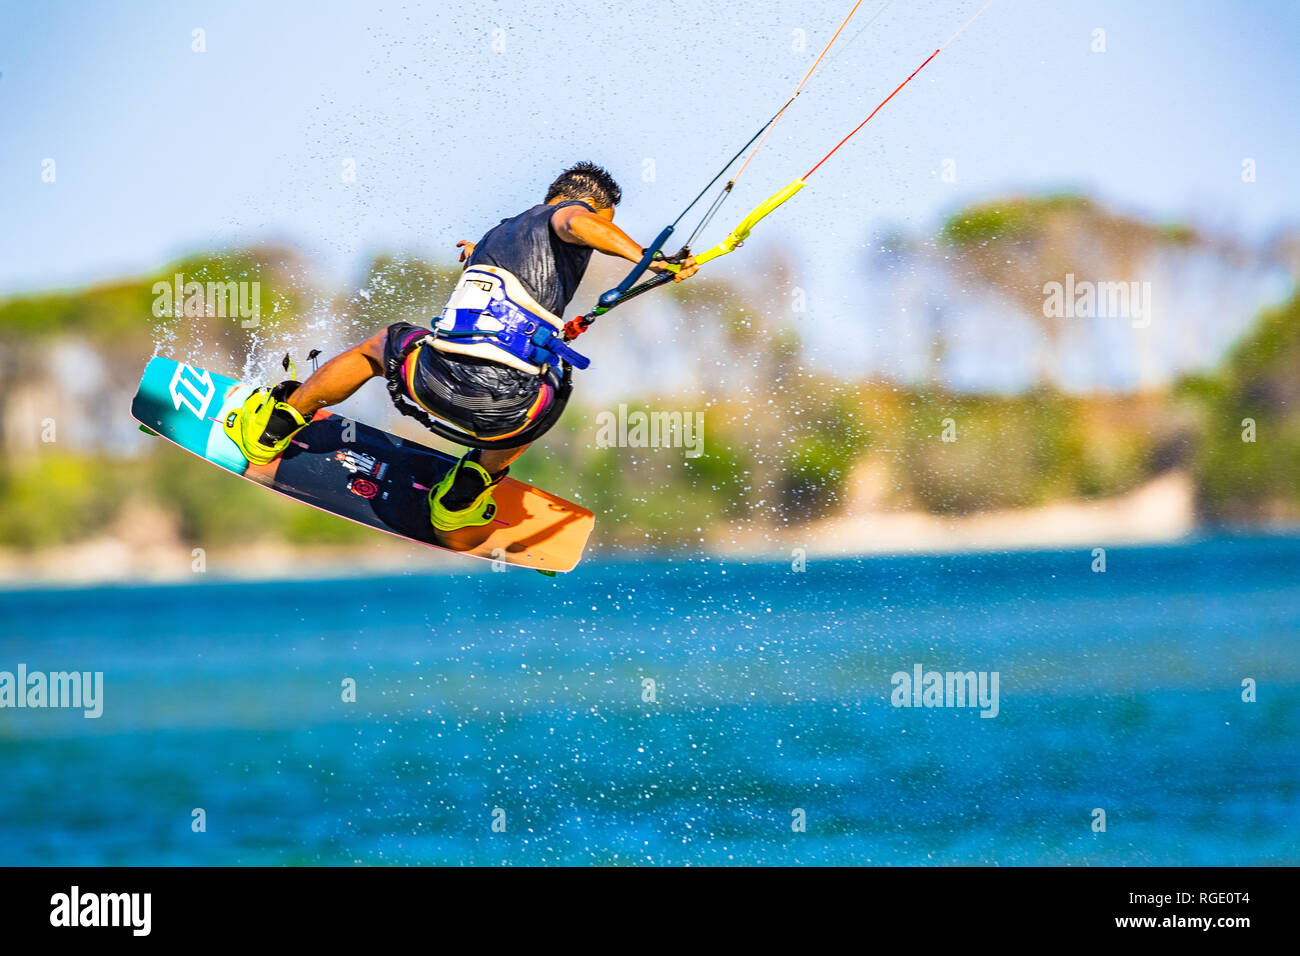 Kitesurfer sulla Costa del Sole tira fuori alcune mosse acrobatiche sulle acque blu turchese nel Queensland, Australia Foto Stock